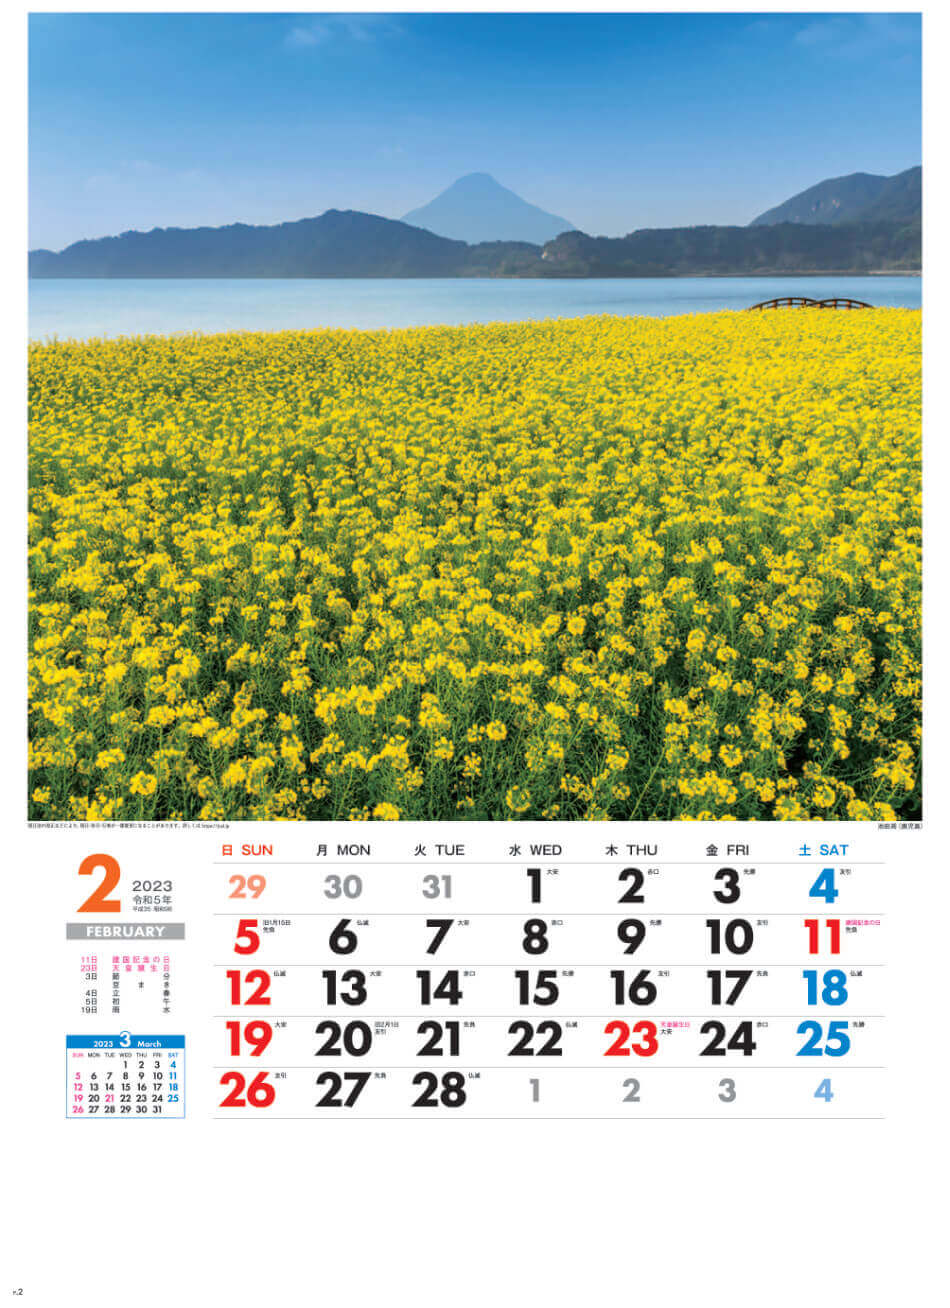 2月 池田湖と開聞岳(鹿児島) 美しき日本 2023年カレンダーの画像